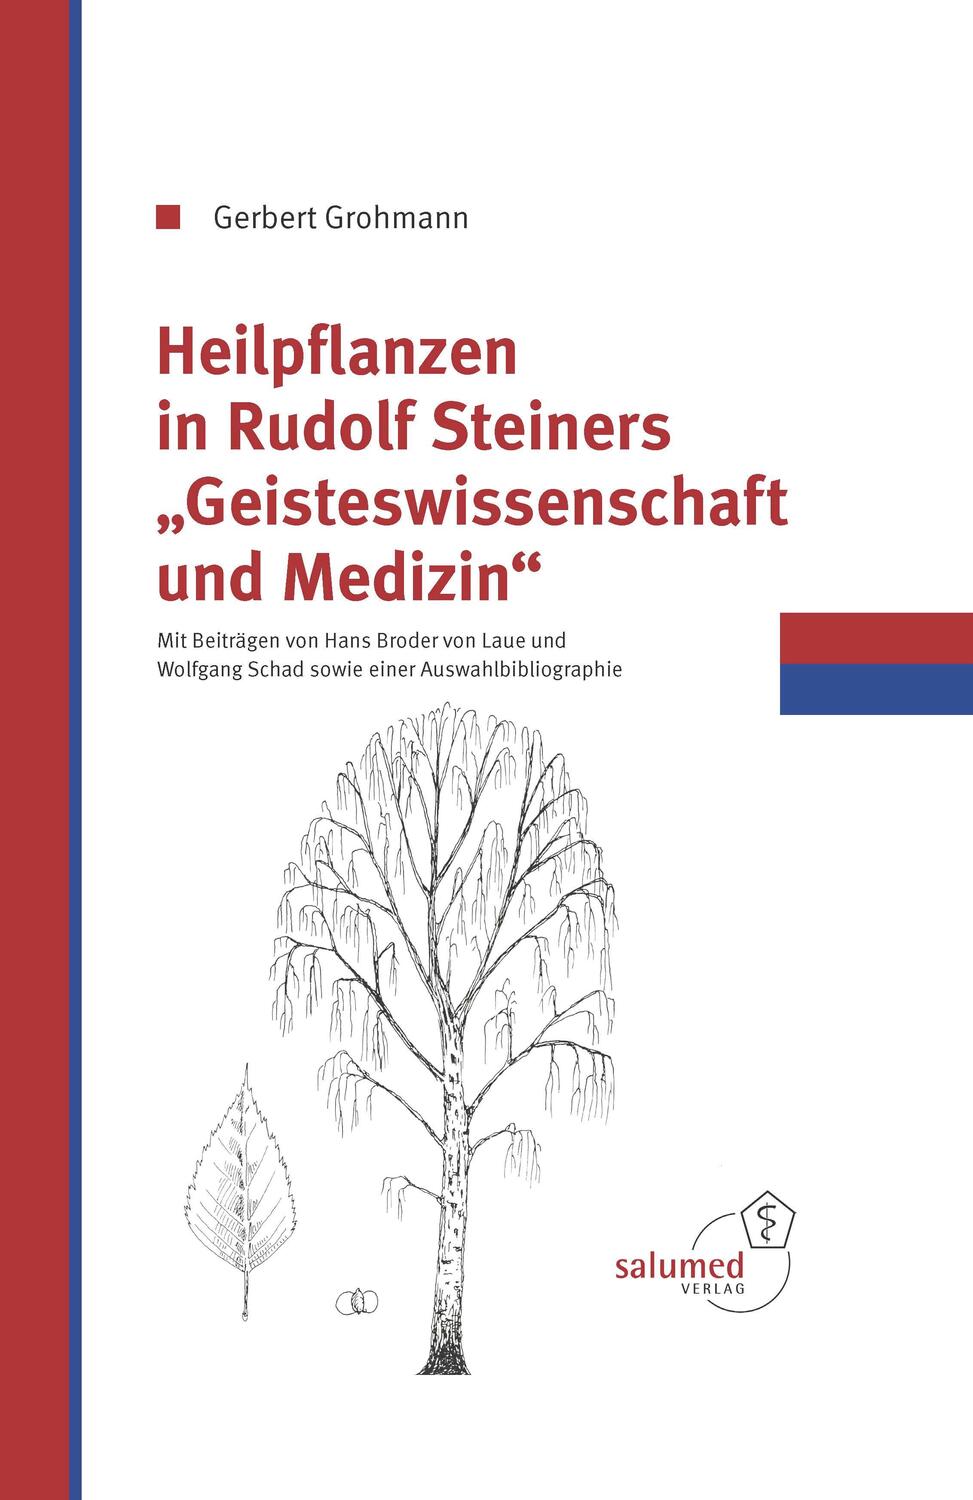 Heilpflanzen in Rudolfs Steiner Geisteswissenschaft und Medizin - Grohmann, Gerbert